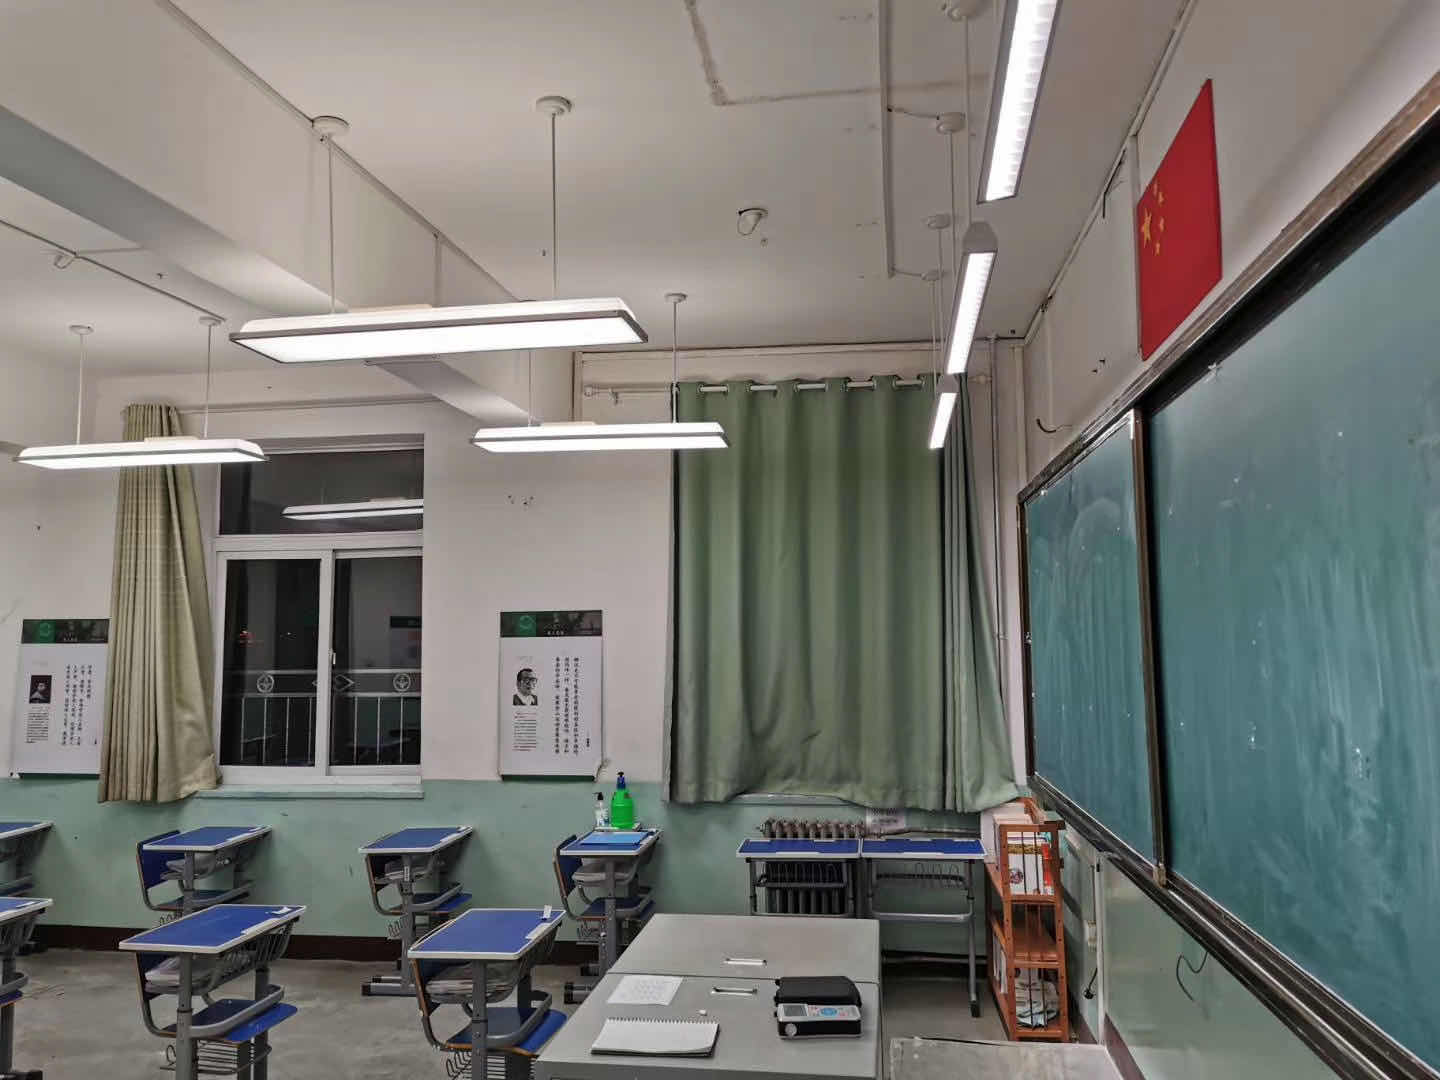 教室照明改造，不止是“新灯换旧灯”那么简单